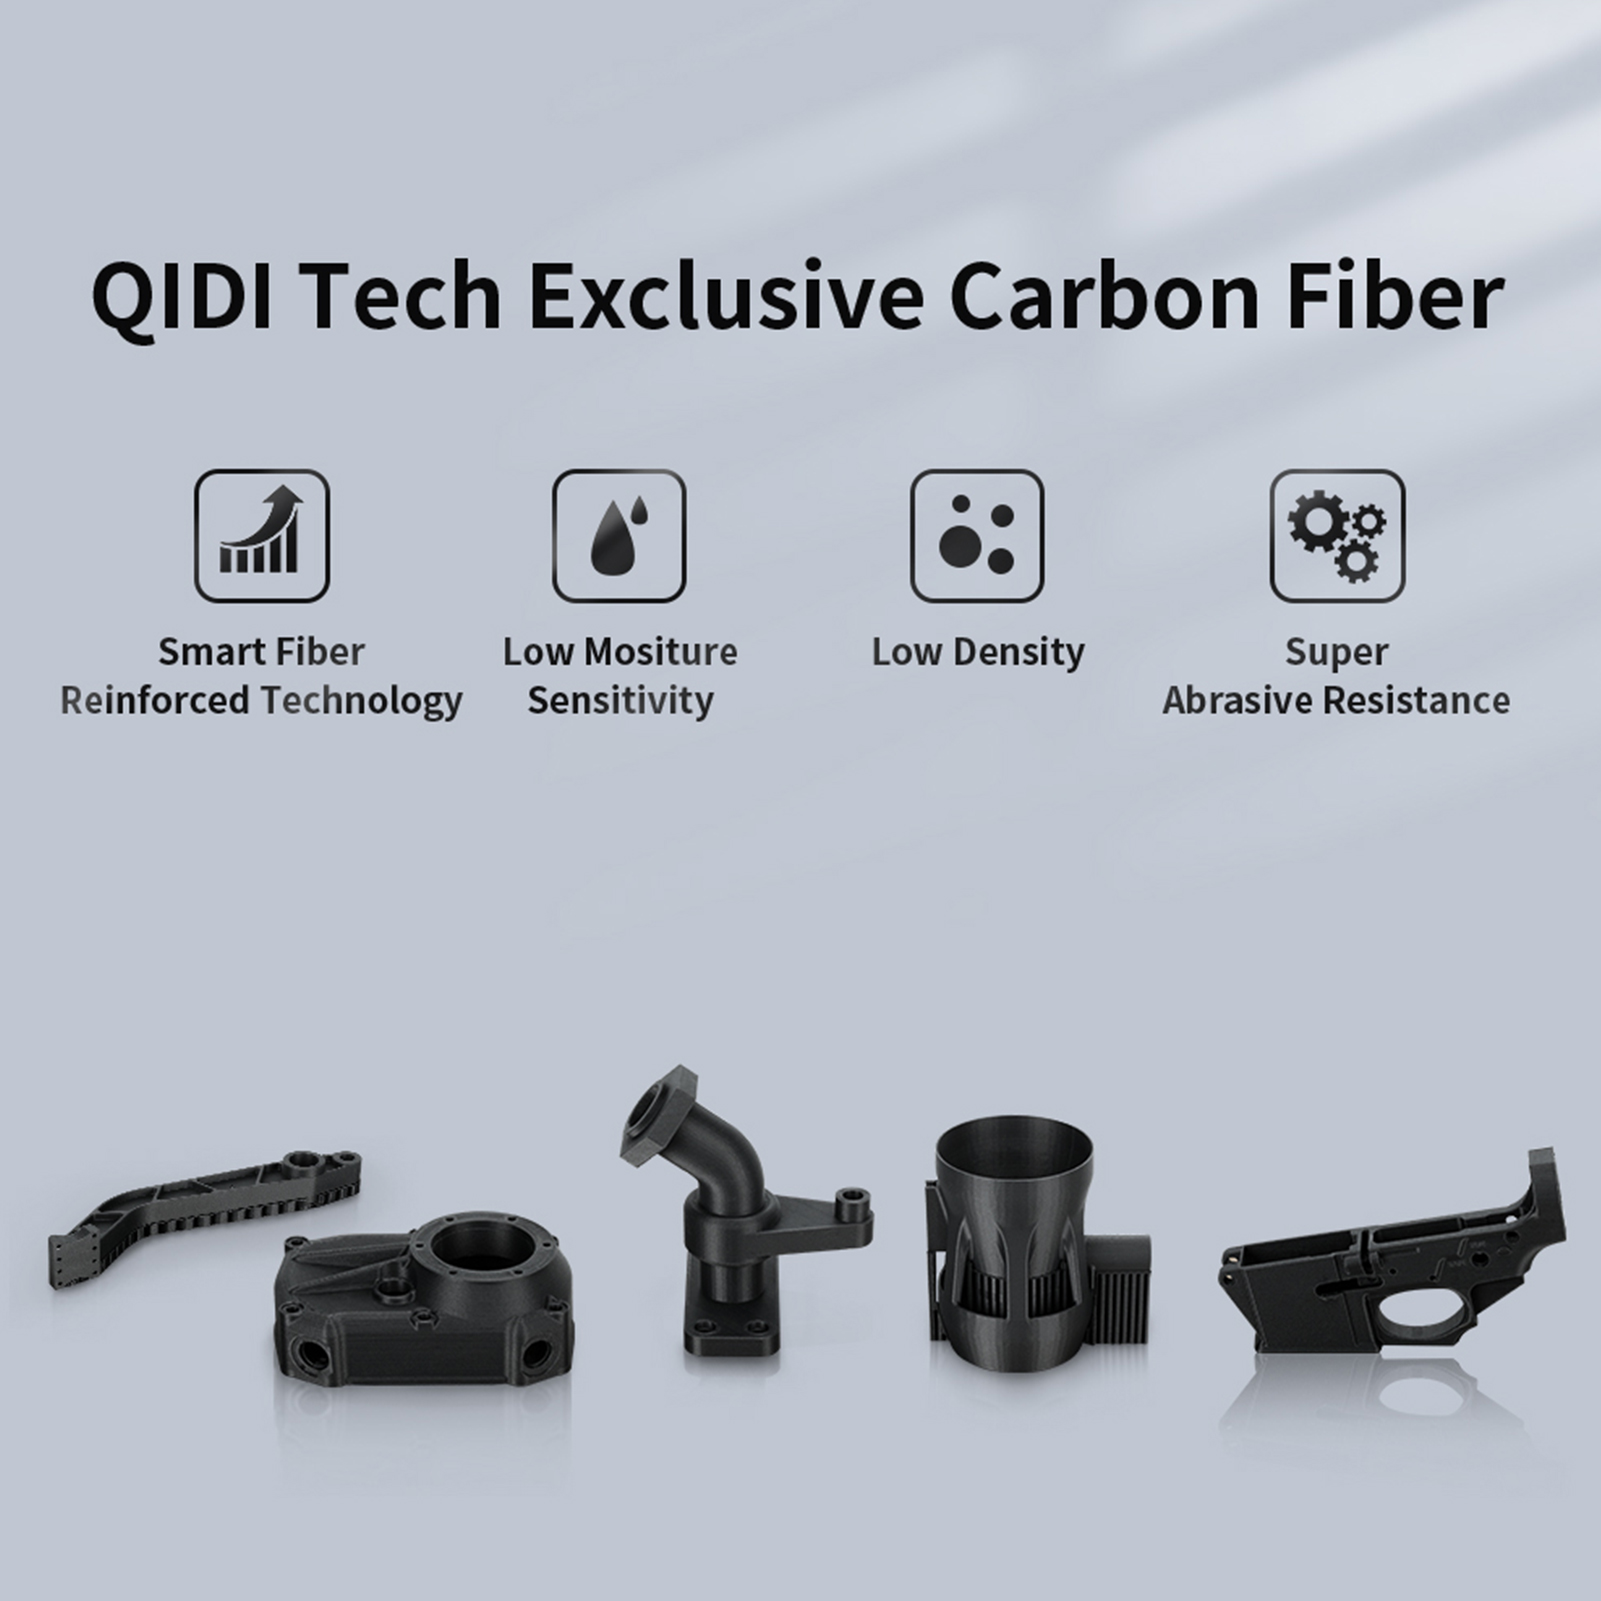 QIDI TECH X-CF Pro 工業用グレード QIDI スライサーで特別炭素繊維とナイロンの印刷のために開発された3 D プリンタ - 2